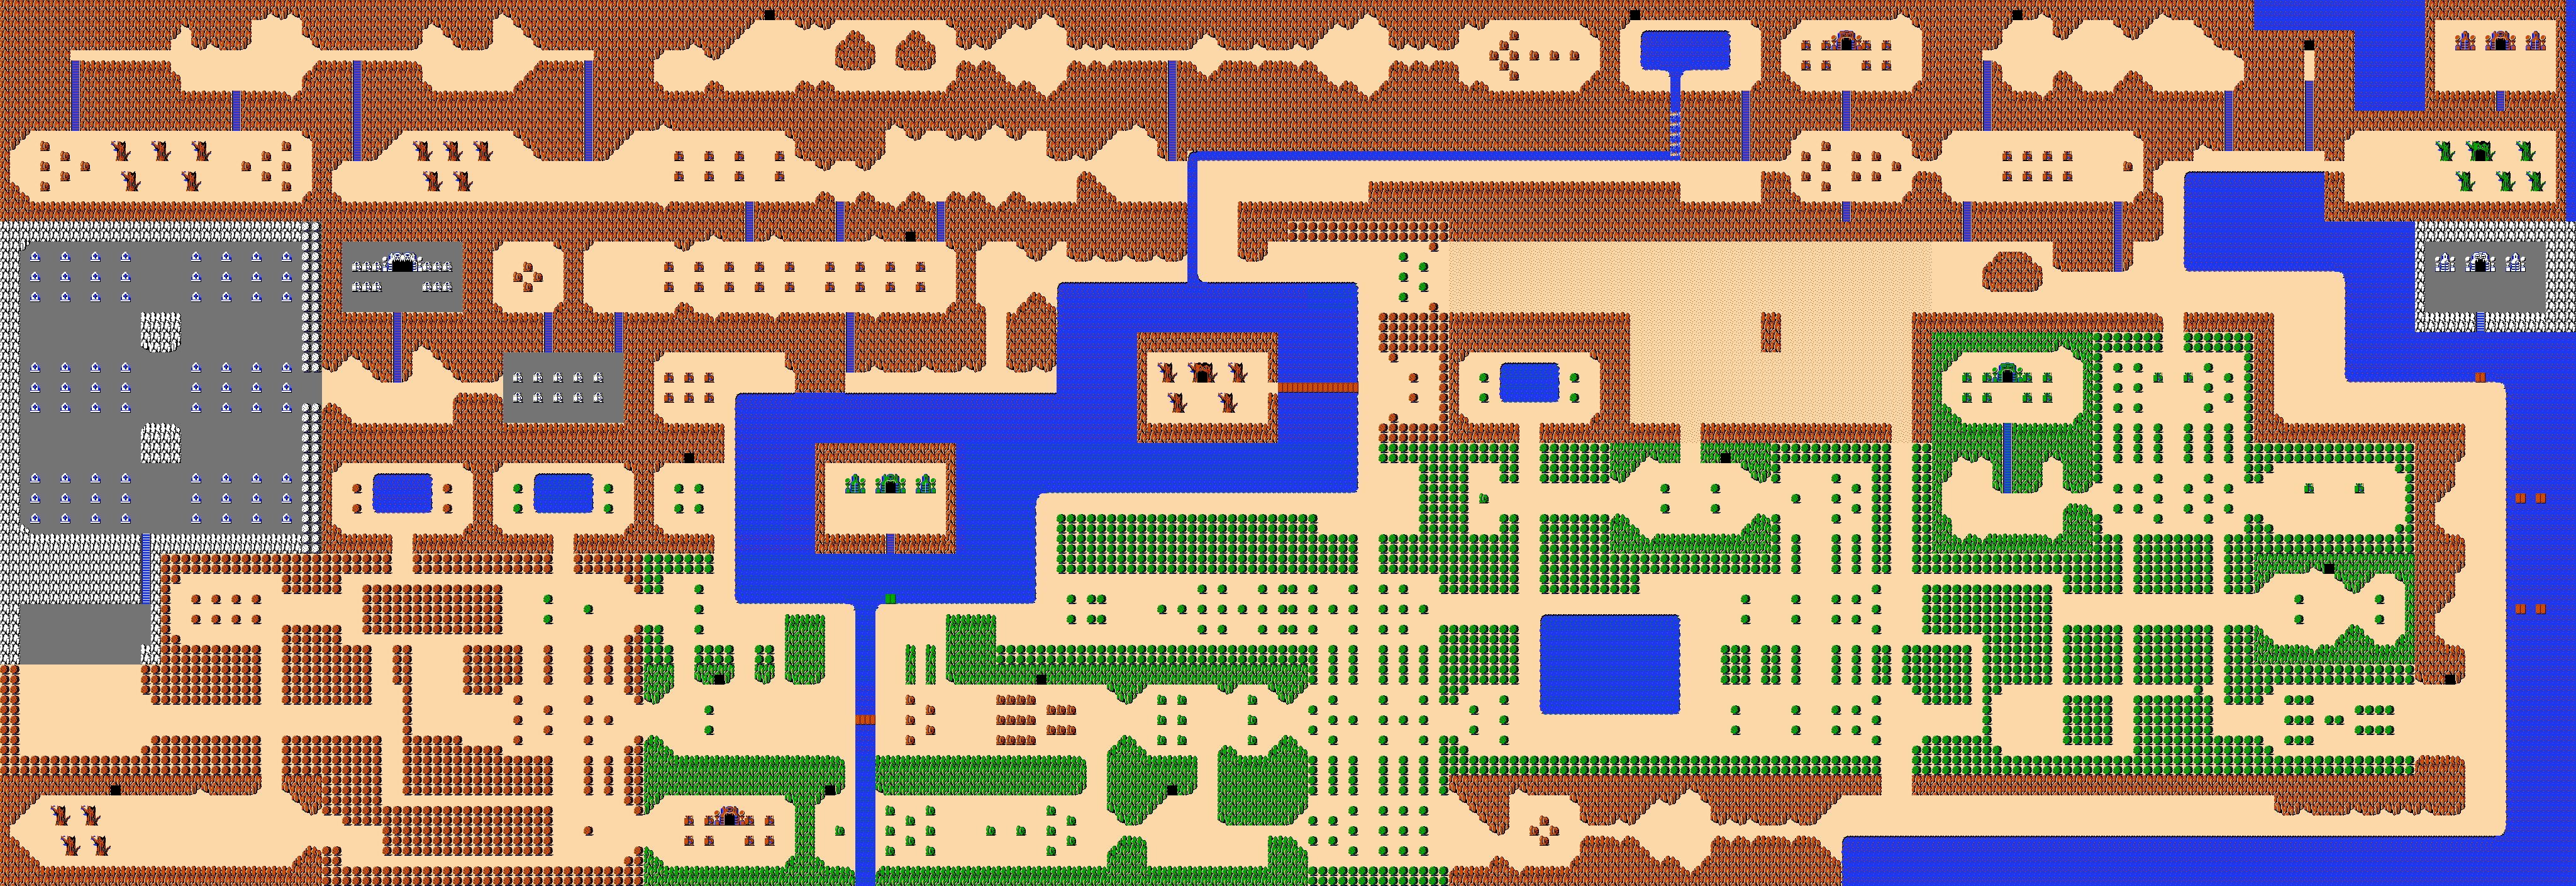 Zelda map, Legend of zelda, Legend of zelda breath